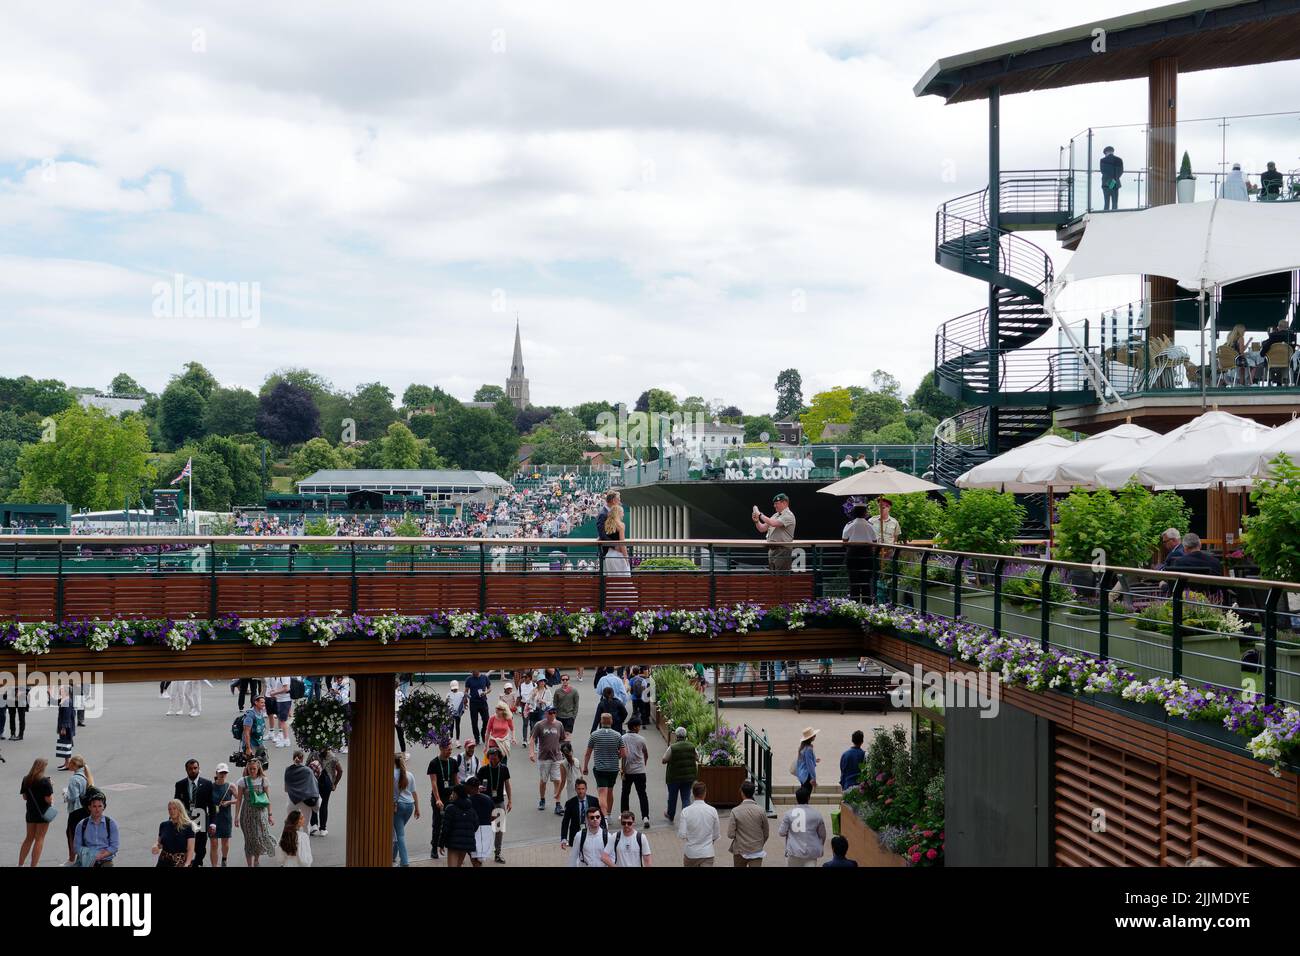 Wimbledon, Gran Londres, Inglaterra, Julio 02 2022: Campeonato de Tenis de Wimbledon. El complejo incluye una pasarela elevada desde el patio central y una escalera Foto de stock